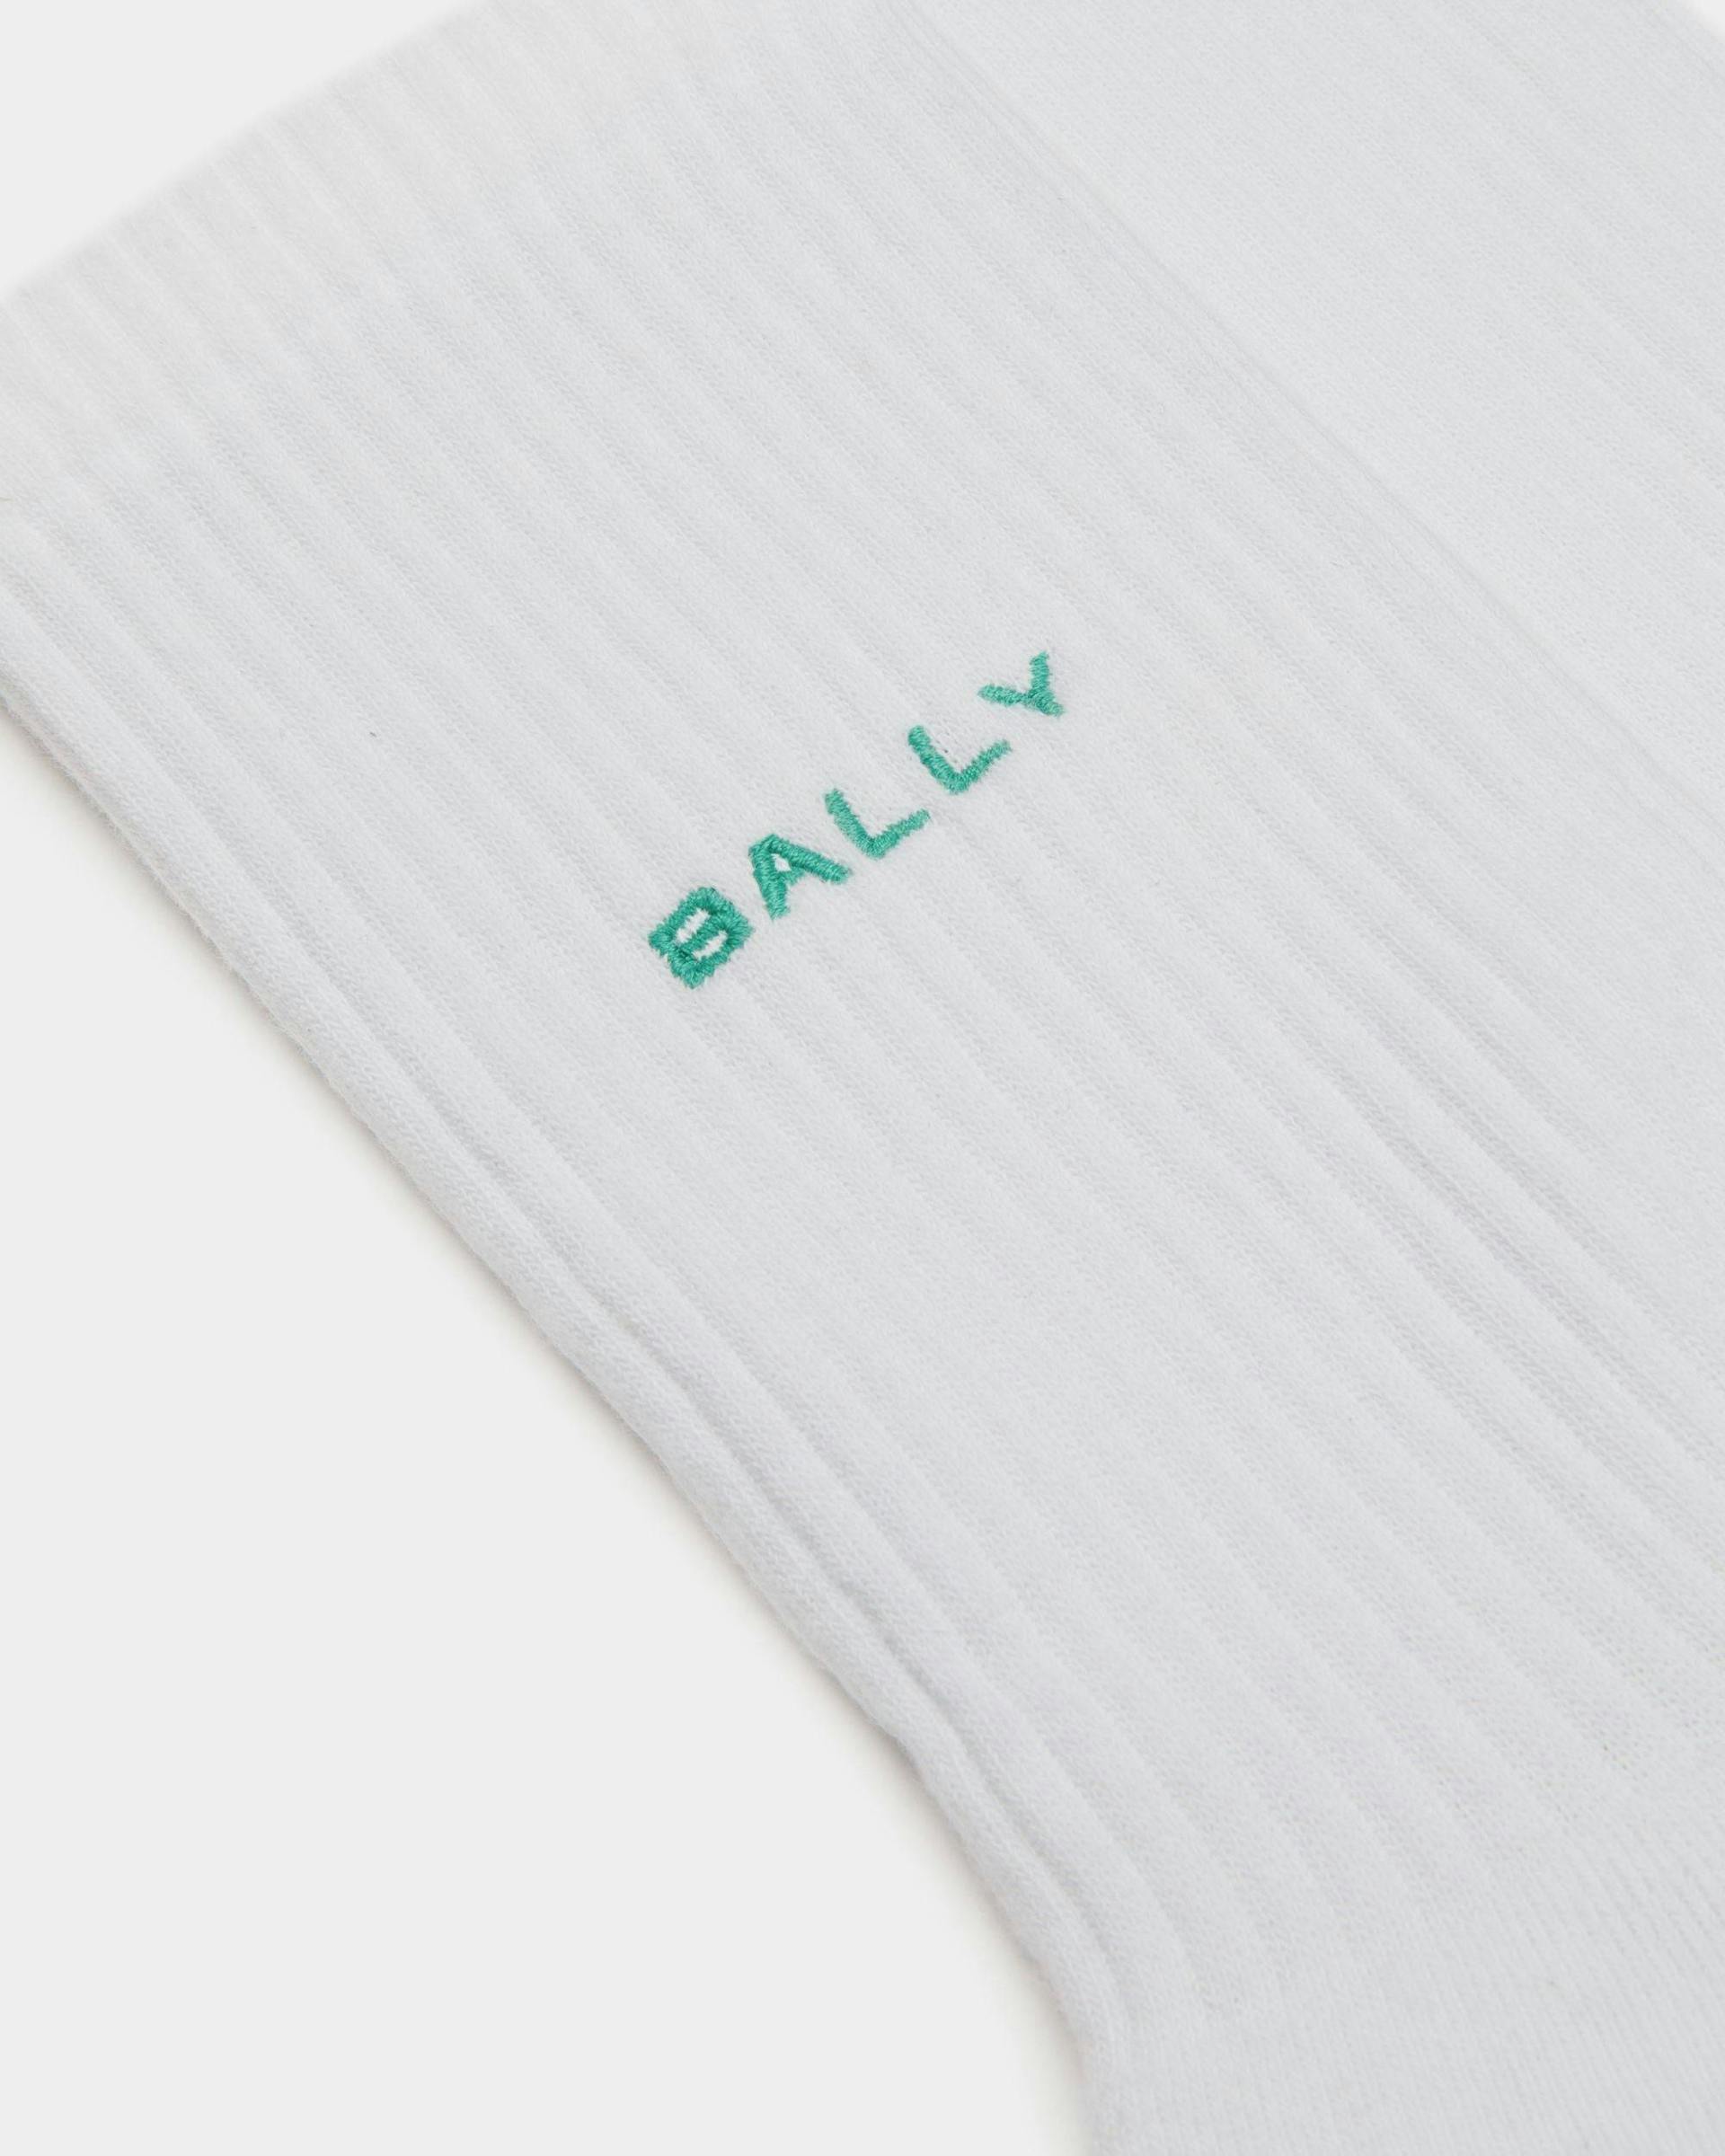 Men's Socks in White Cotton | Bally | Still Life Detail